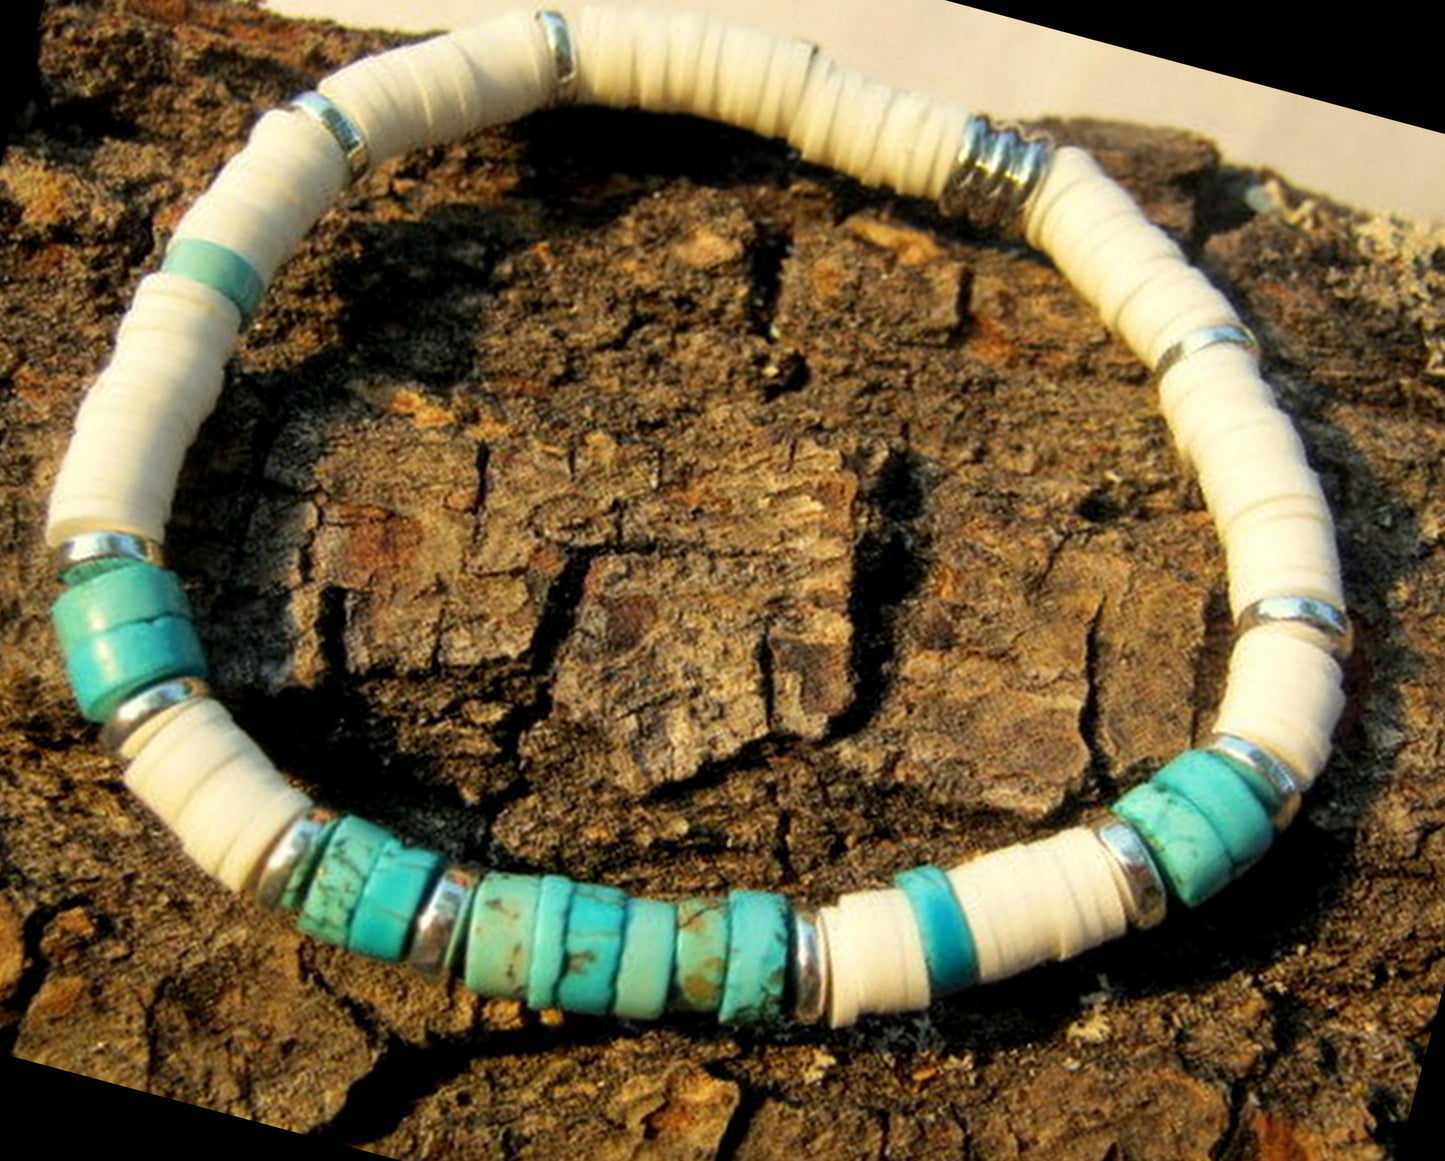 Men African TURQUOISE Bracelet white african style polymer heishi, silver hematite Healing stone, handmade bracelet men gift